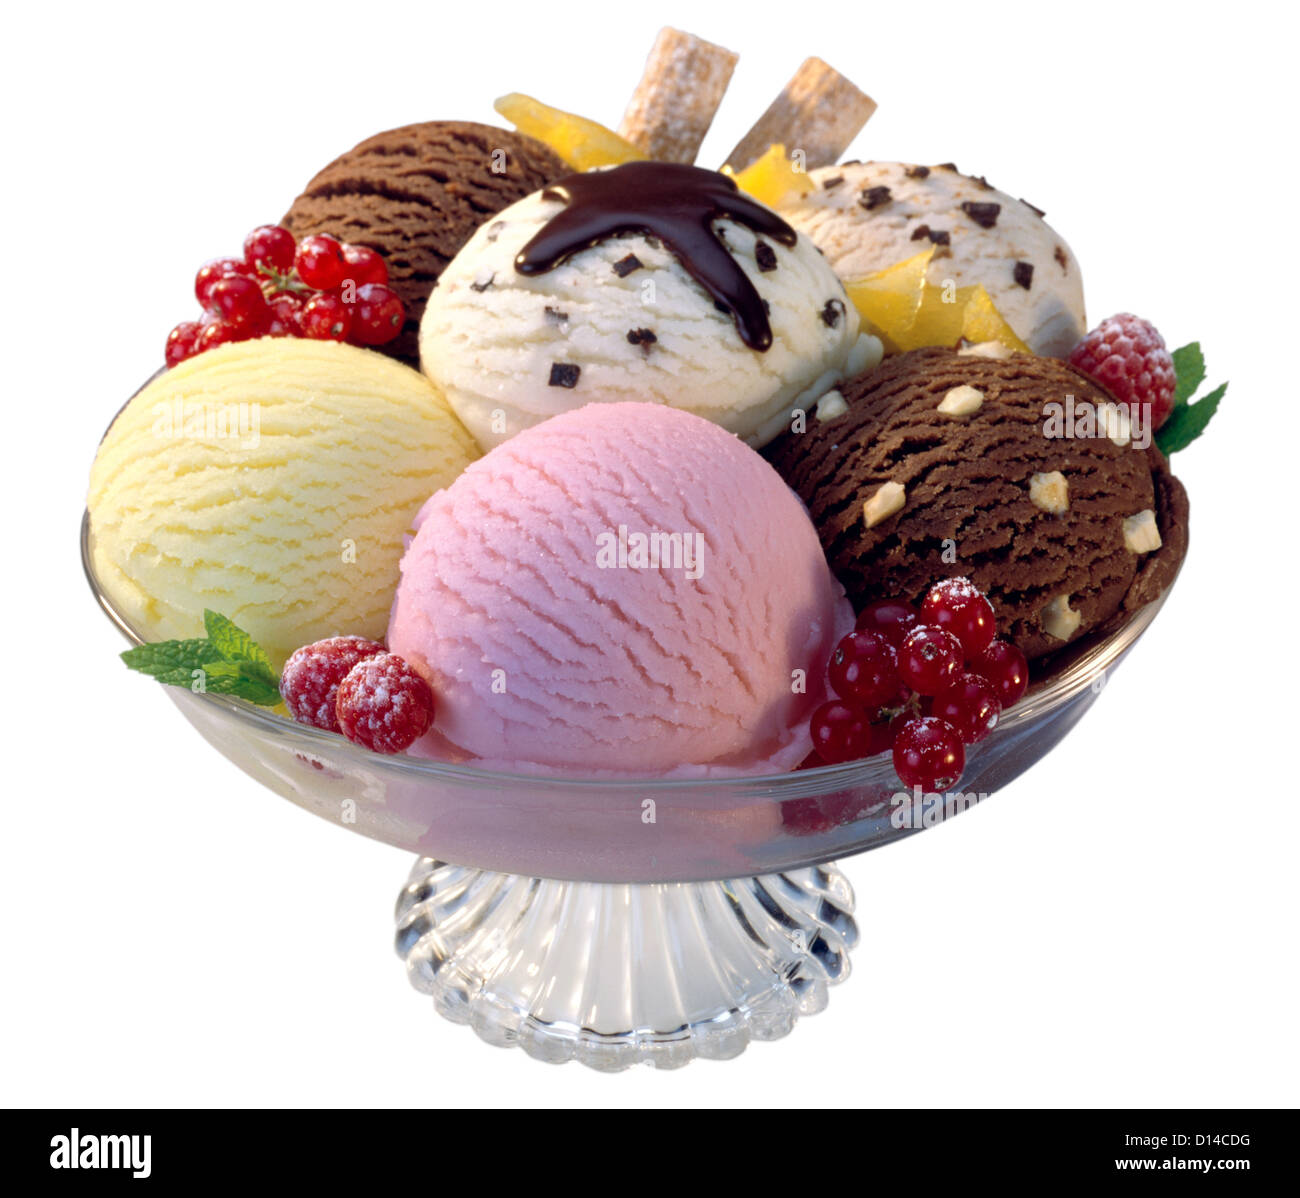 Ice Cream sfere composizione in una ciotola di vetro Foto Stock